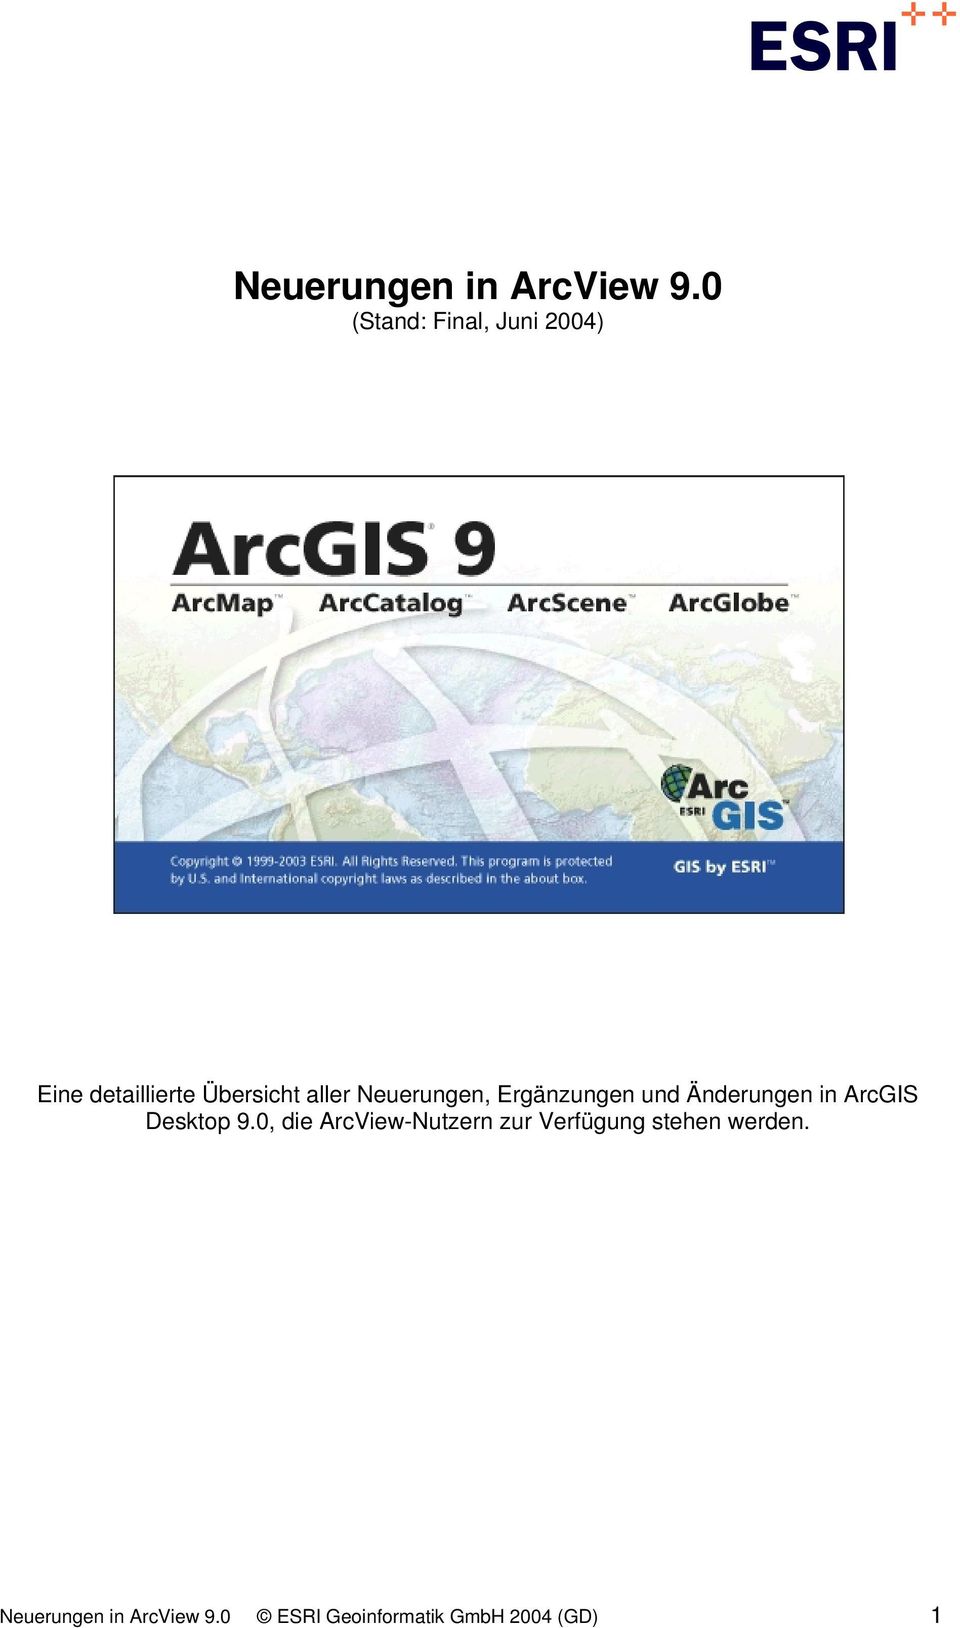 Neuerungen, Ergänzungen und Änderungen in ArcGIS Desktop 9.